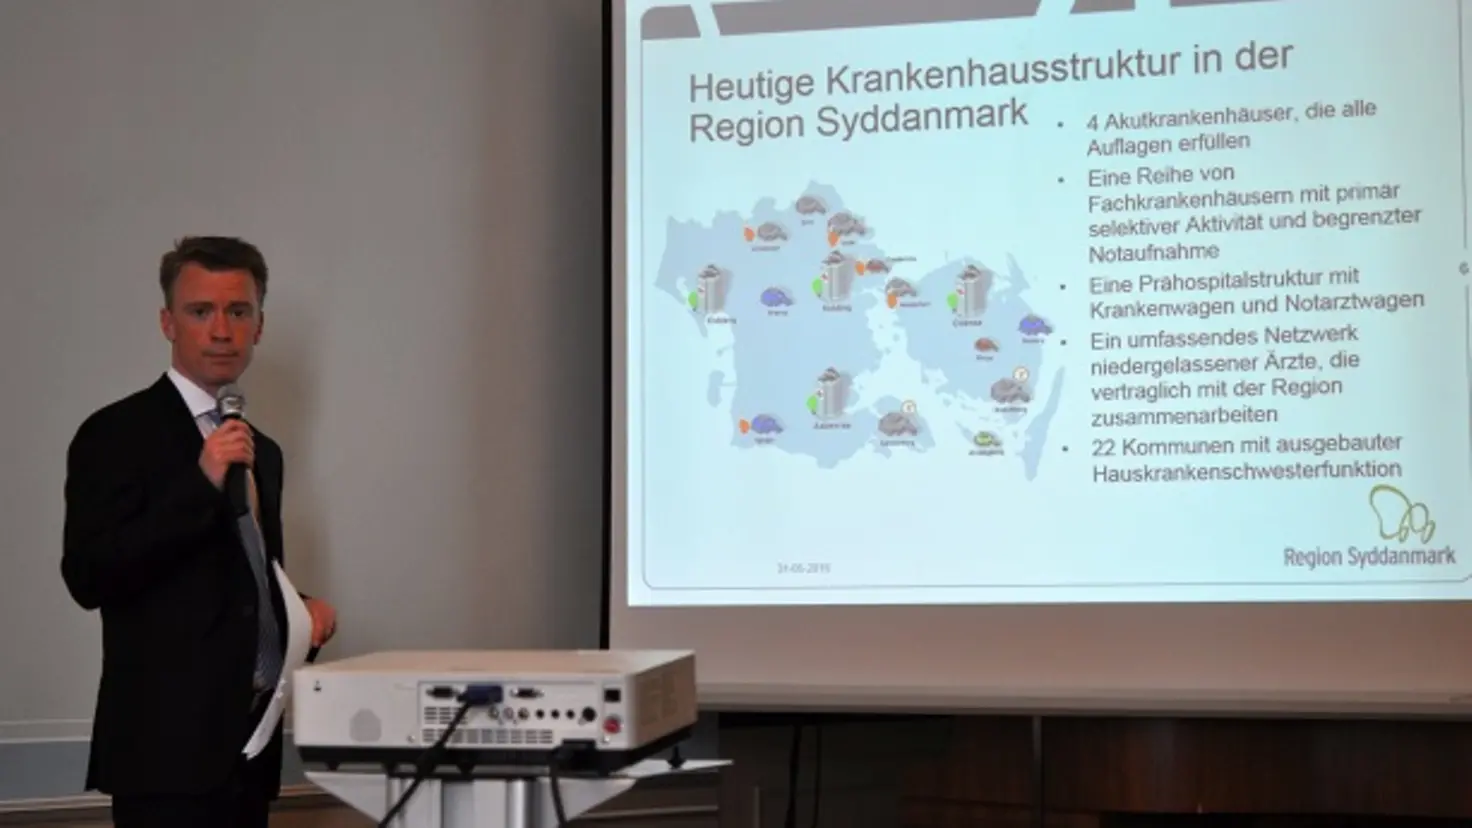 Sören Lindgaard mit Mikrofon in der Hand vor Präsentation am Whiteboard